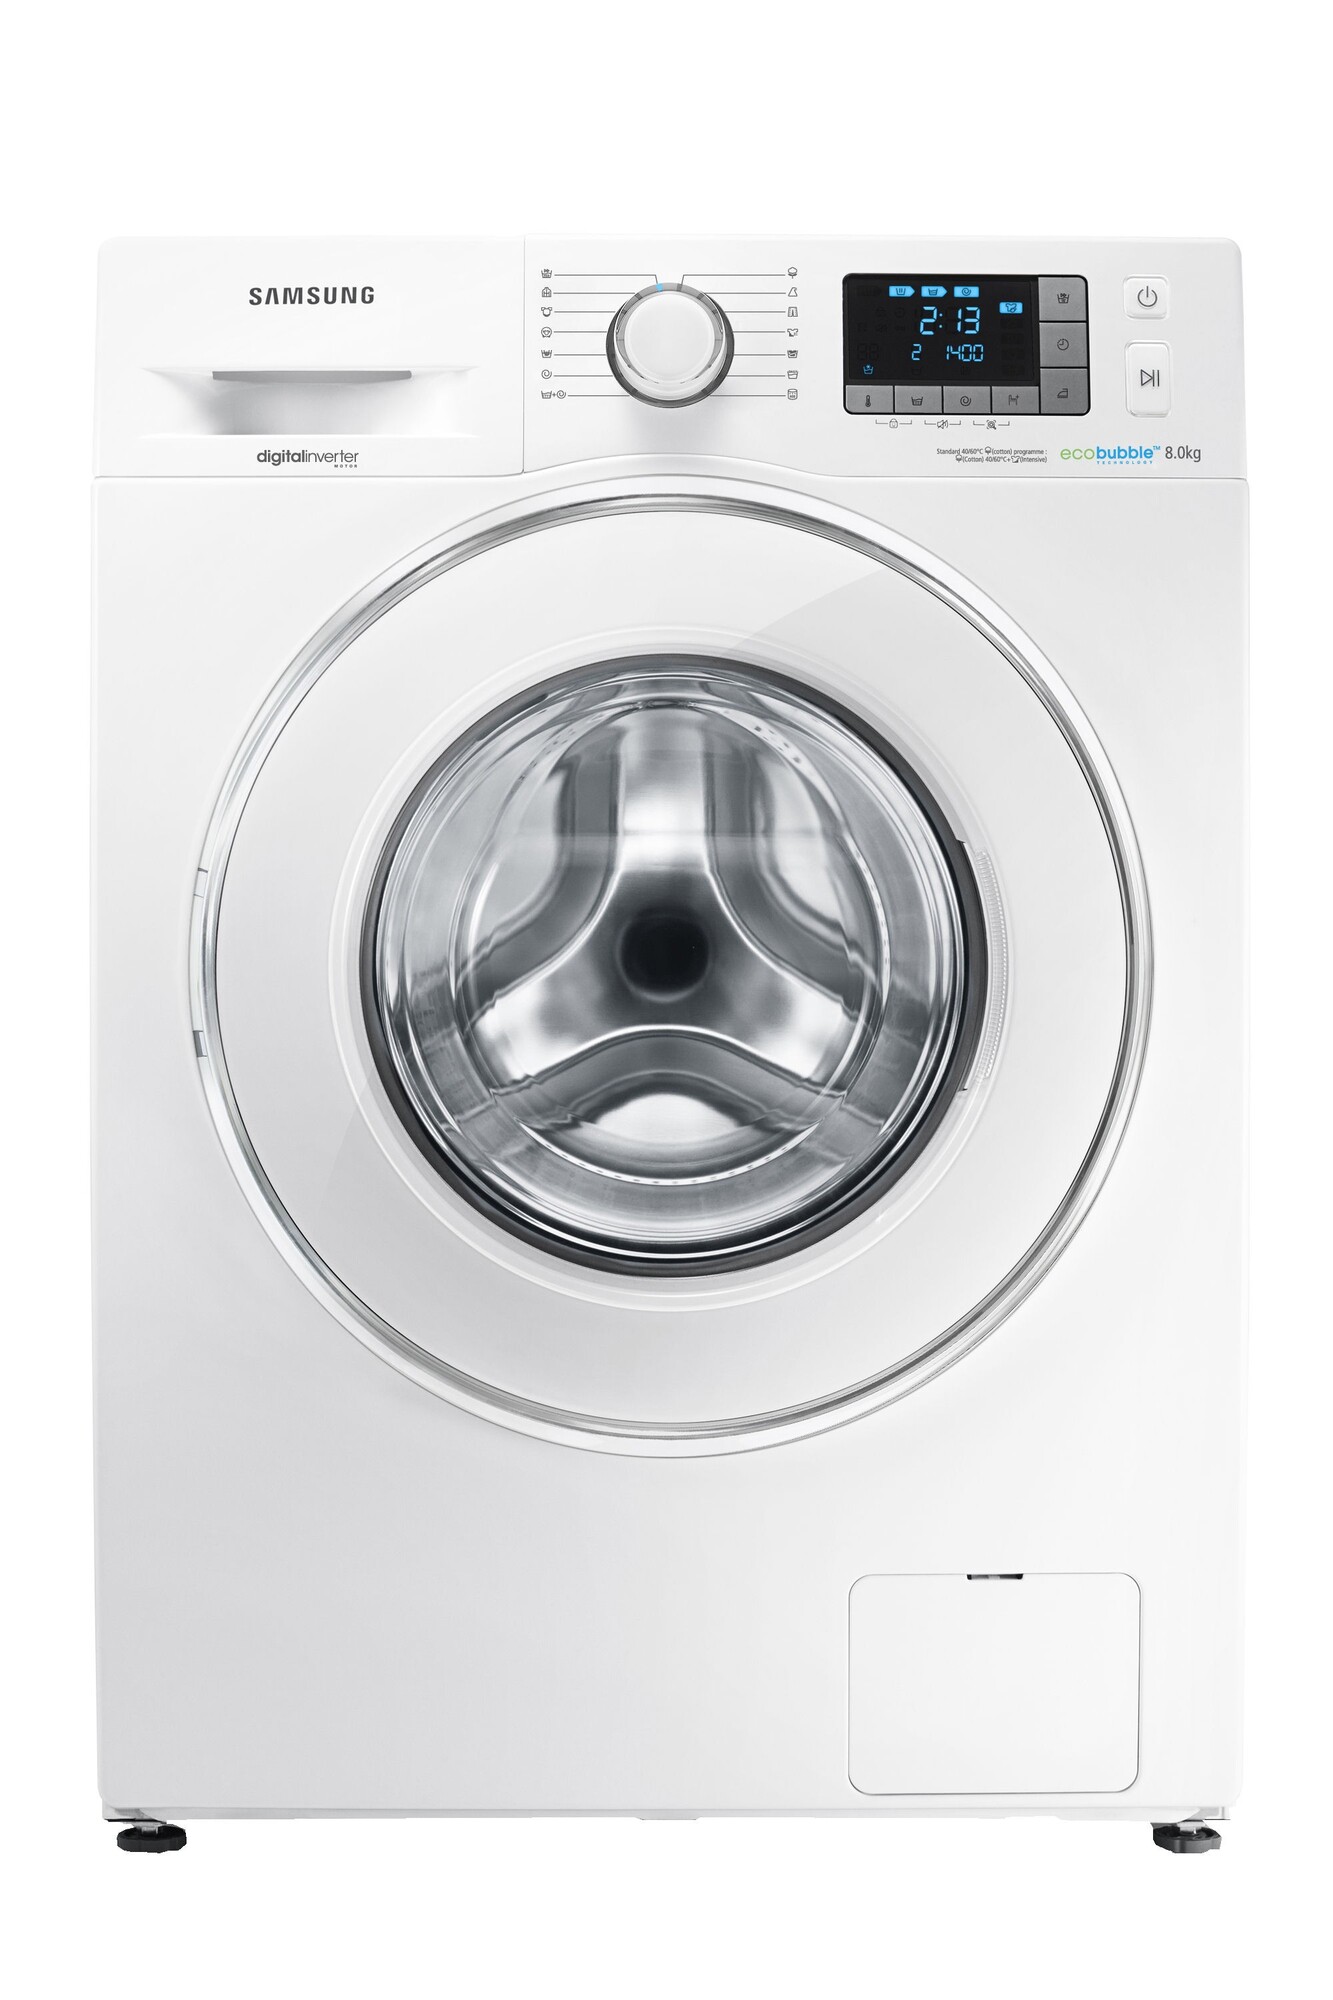 håndtag ligevægt stewardesse Samsung F500 vaskemaskine WF80F5E5P4W | Elgiganten